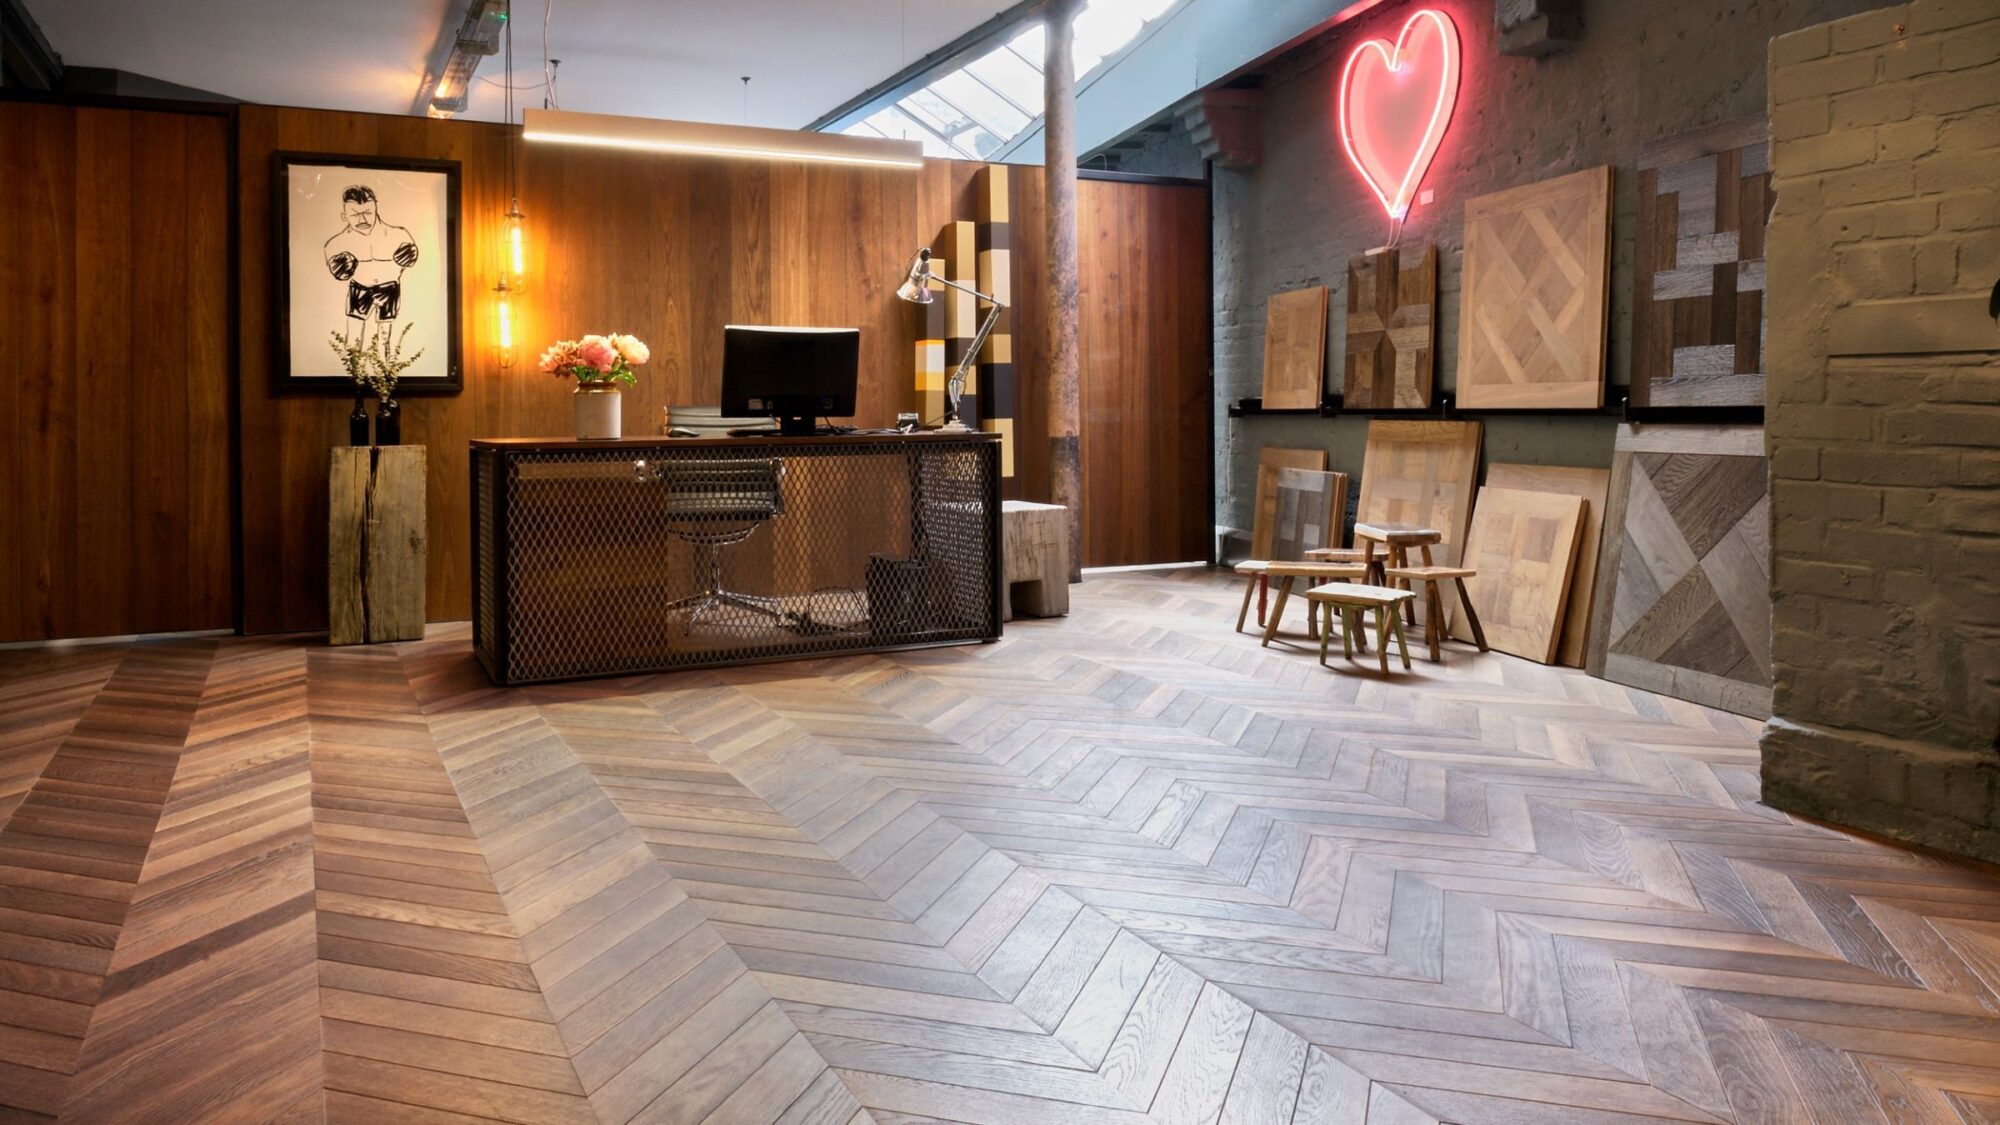 solid floor london showroom east desk on chevron floor & neon heart